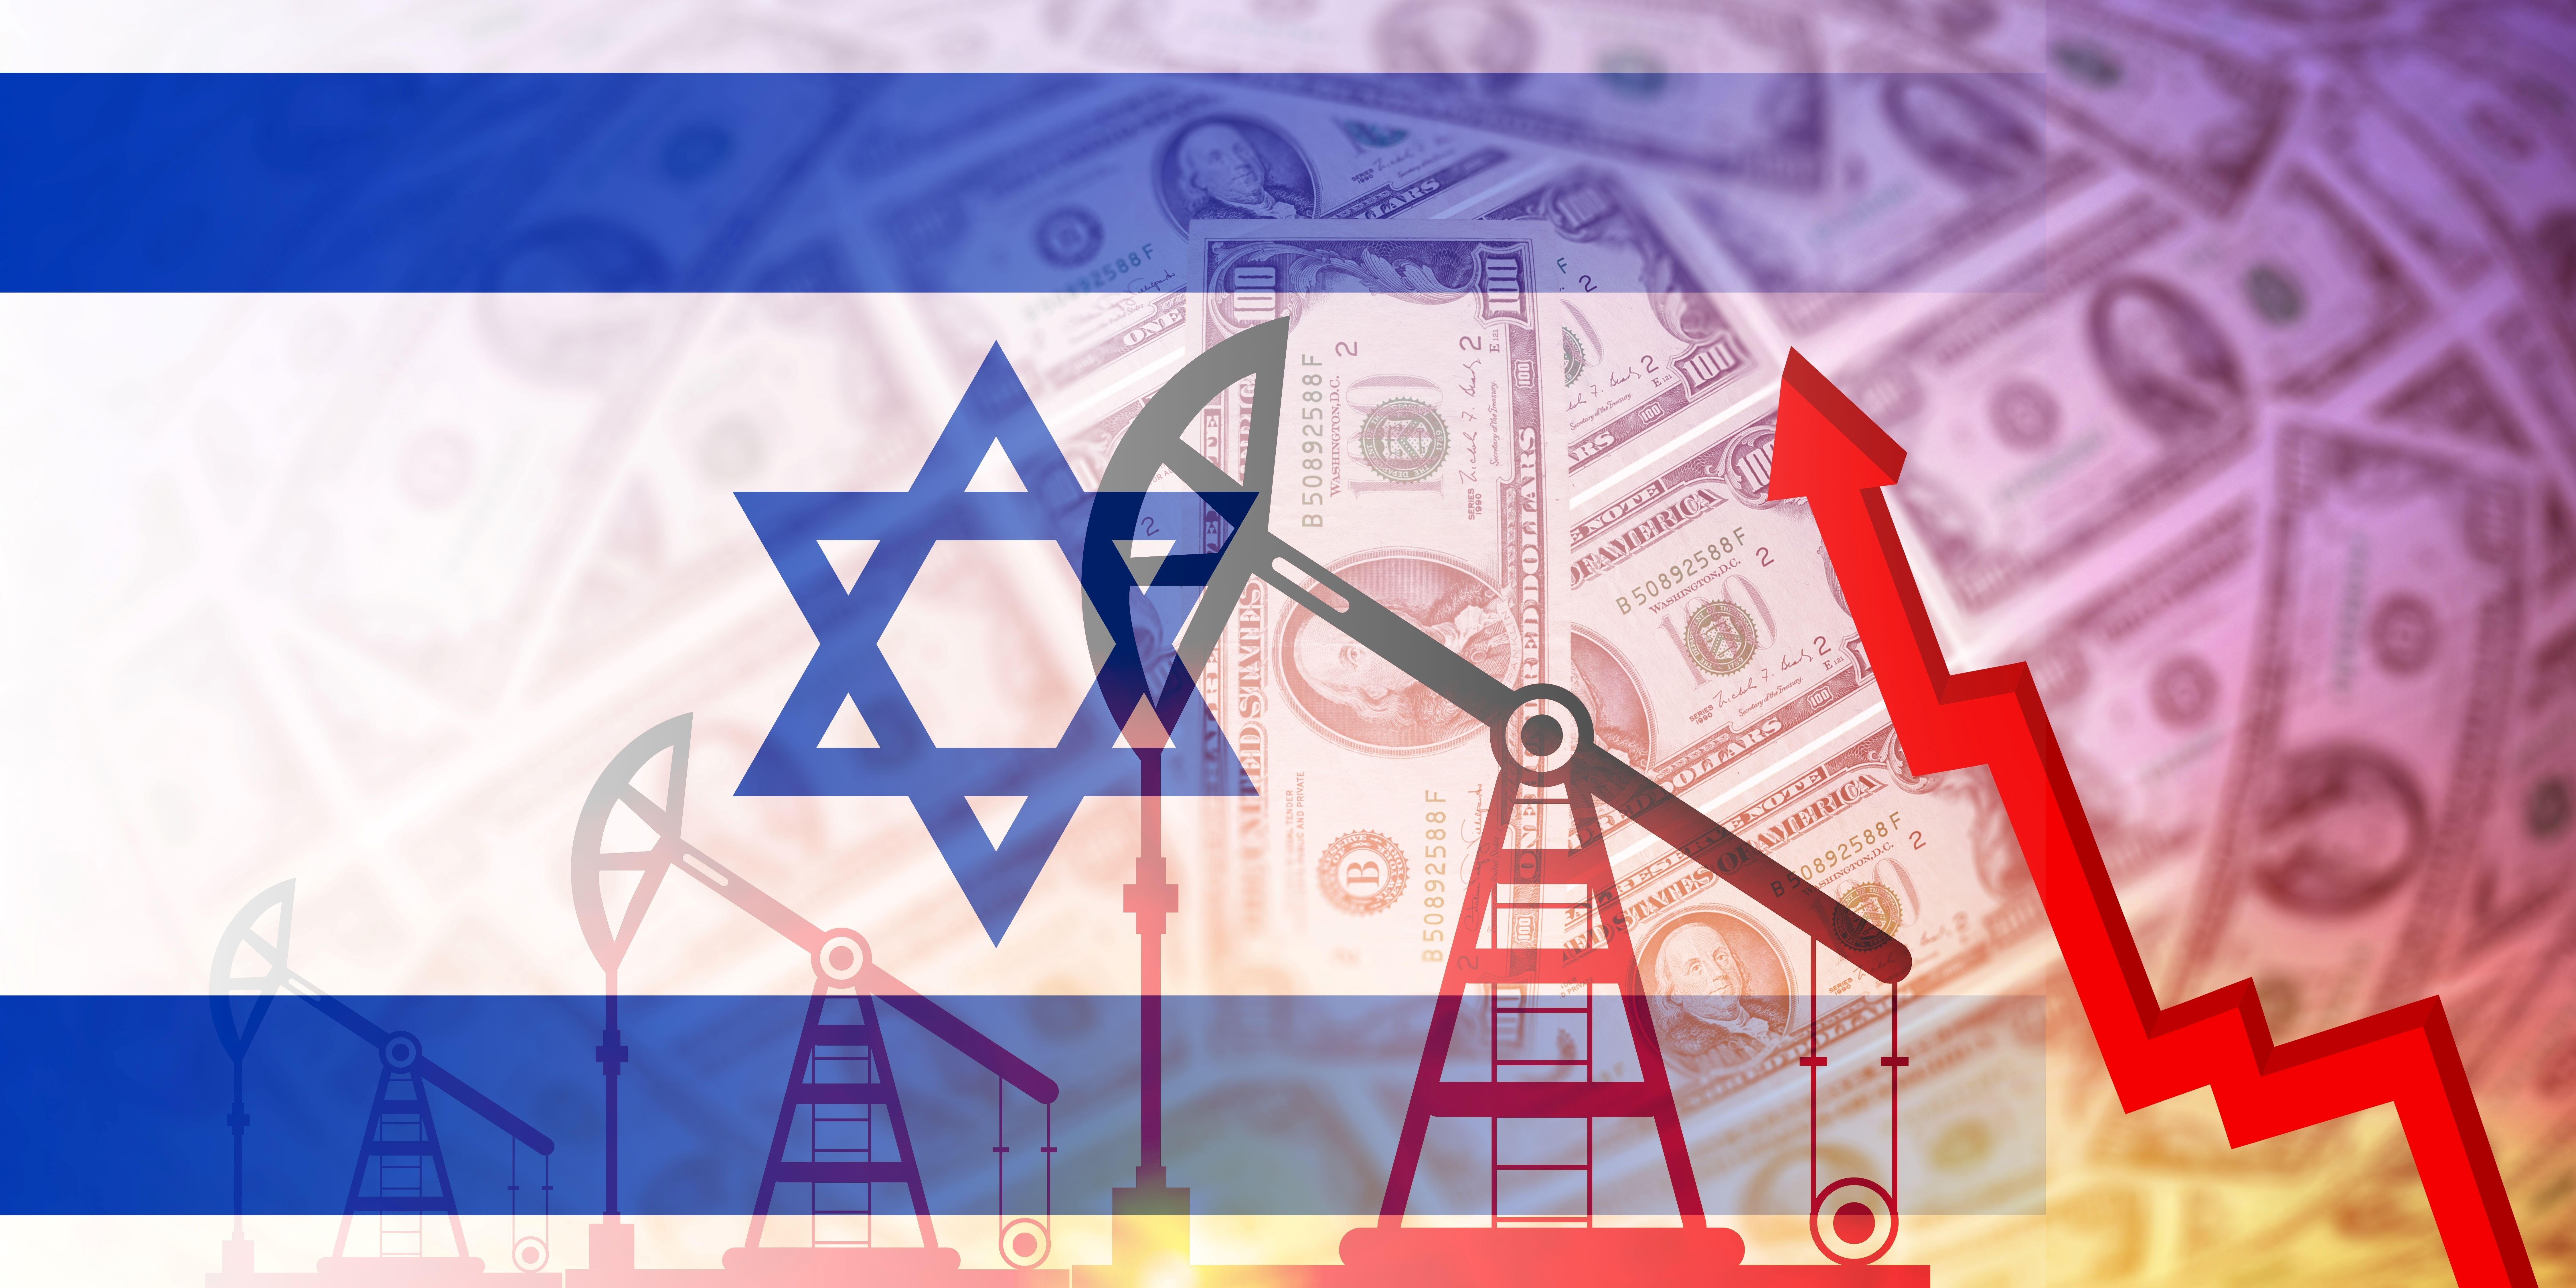 Bizonytalanságot okoz az izraeli-palesztin háború a nemzetközi olajszektorban